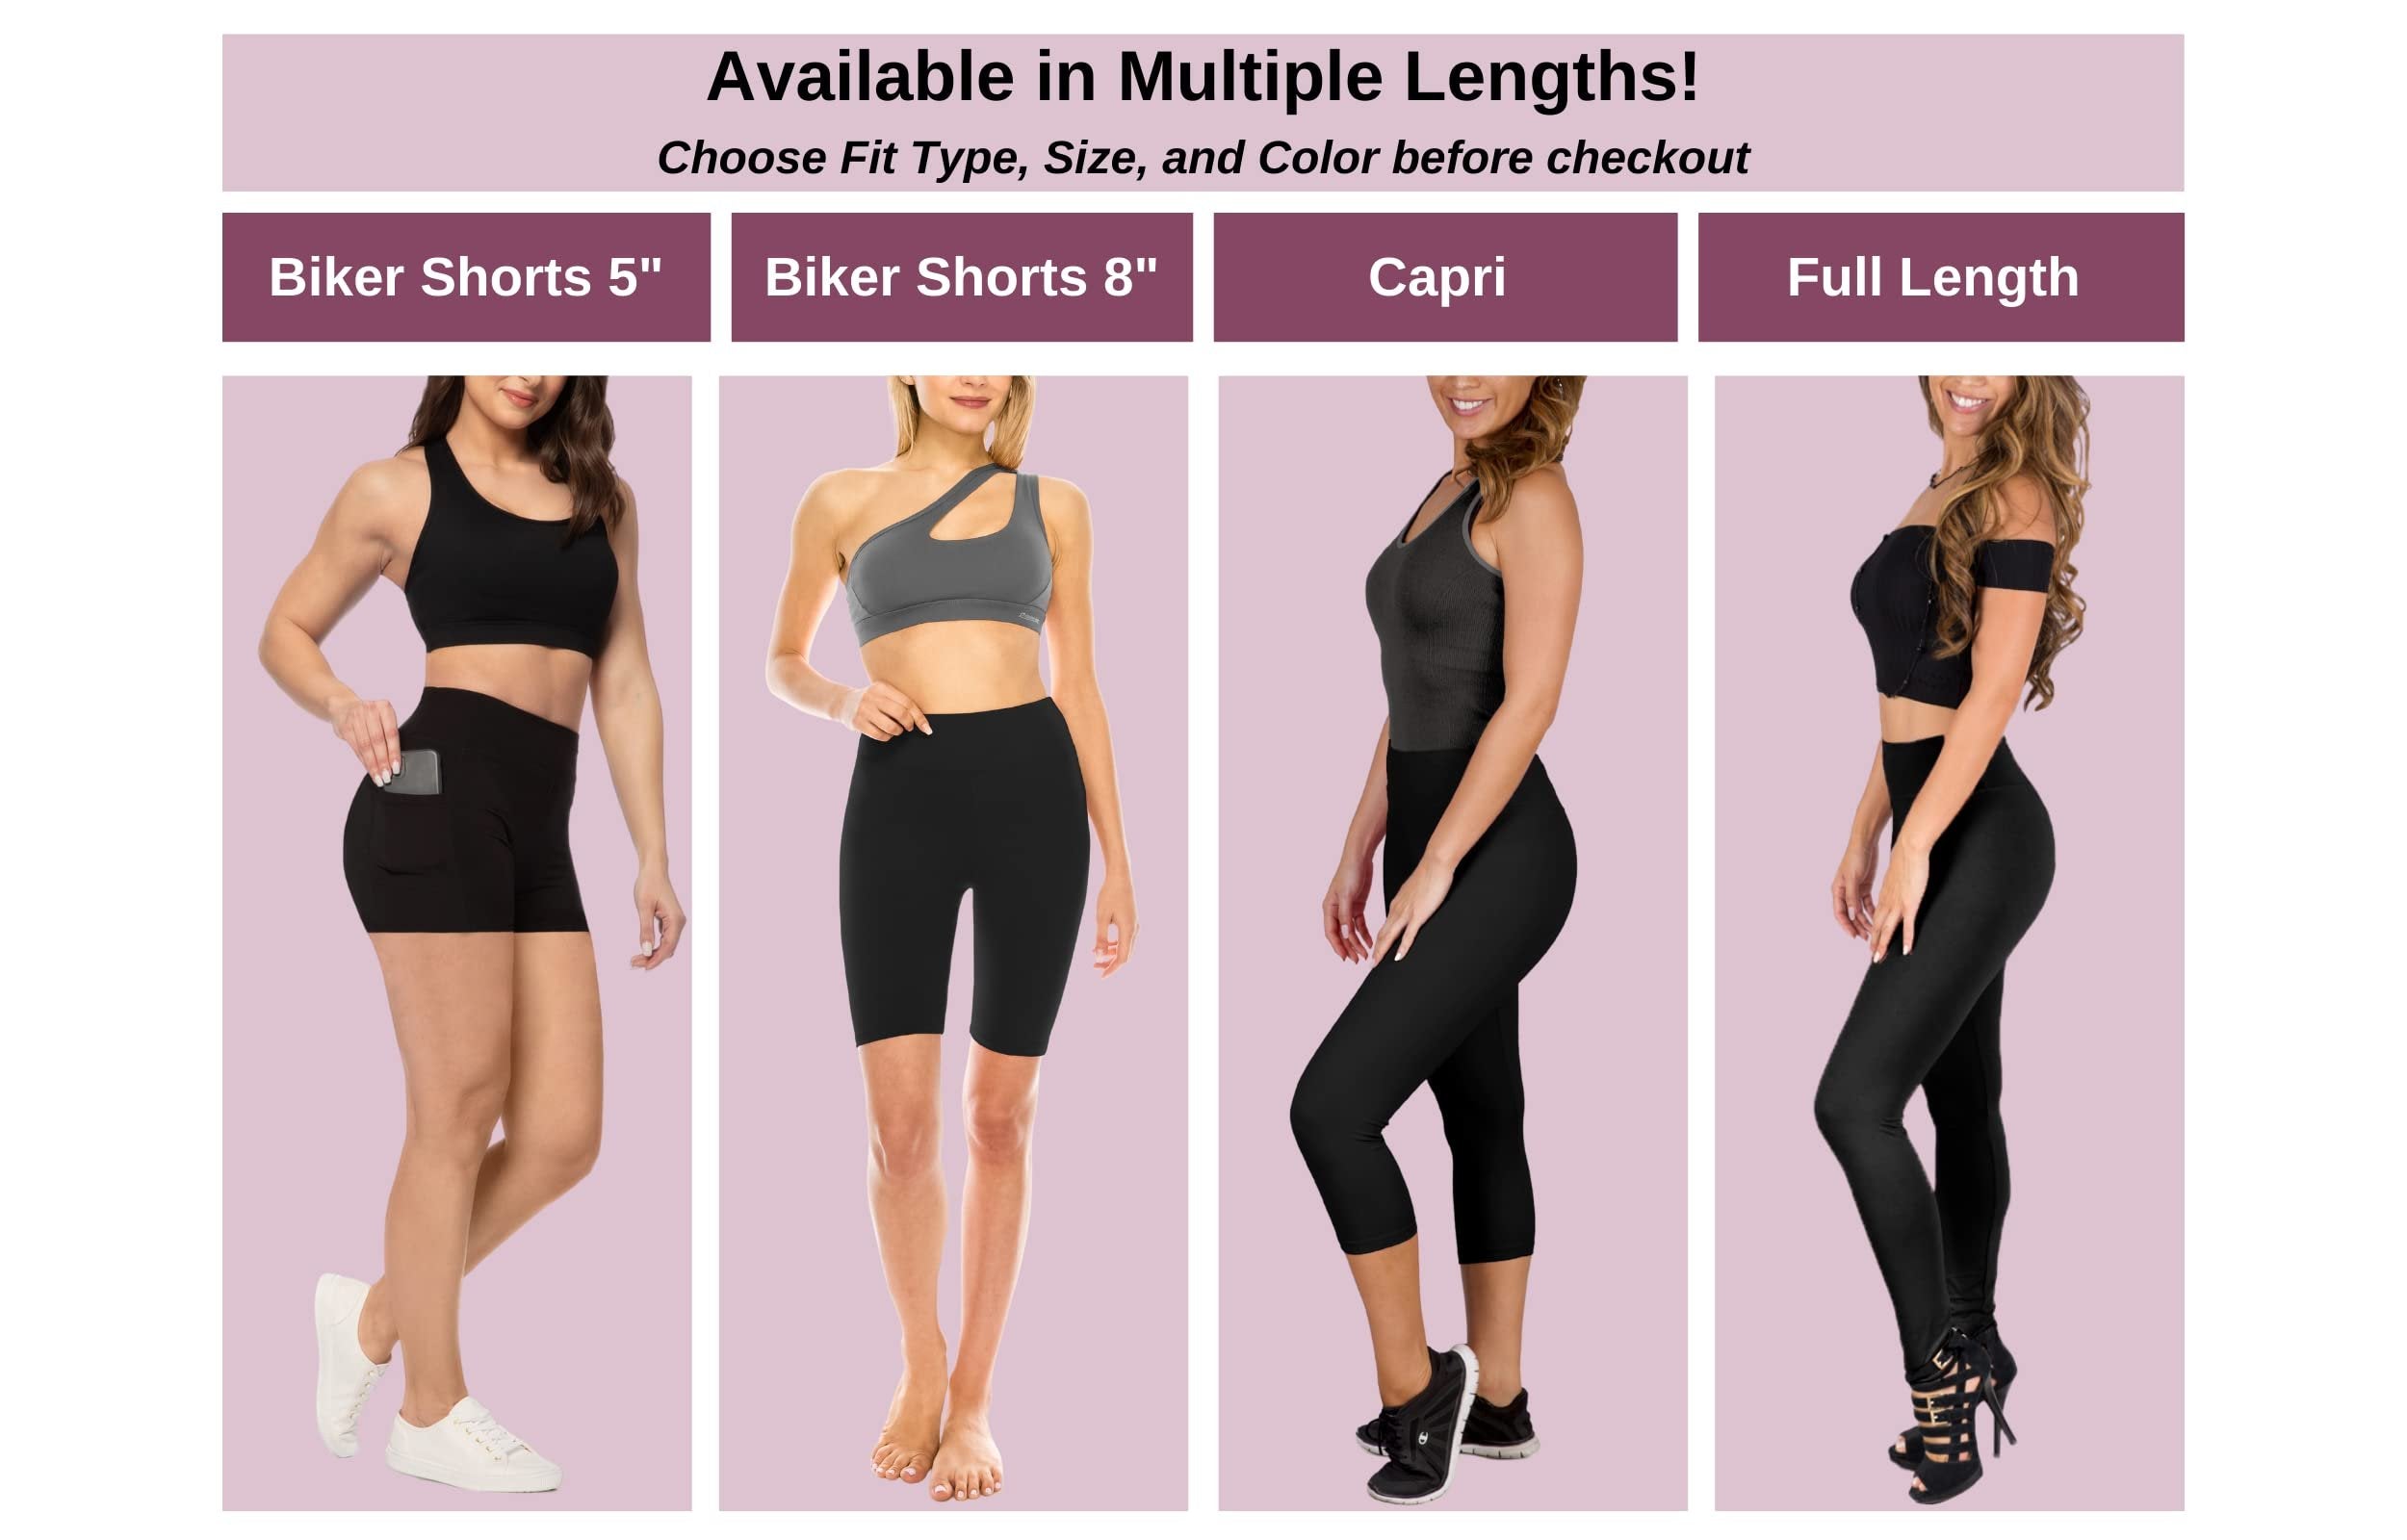 SATINA High Waisted Capri Leggings for Women - Capri Leggings for Women - High Waist for Tummy Control - Gray Capri Leggings for |3 Inch Waistband (Plus Size, Gray)